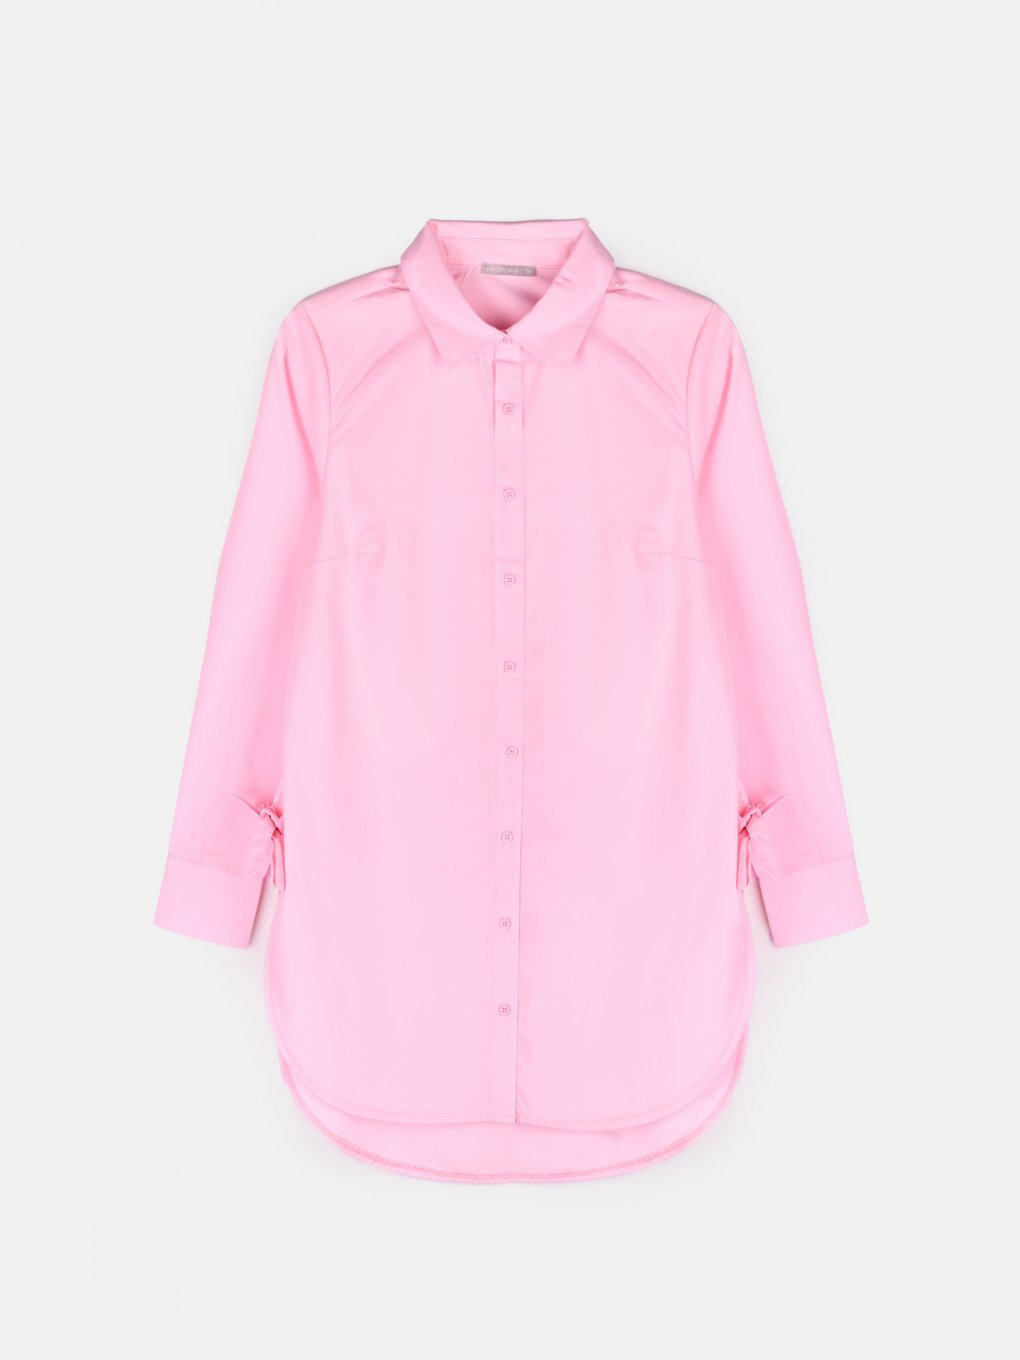 Oversize cotton blend shirt